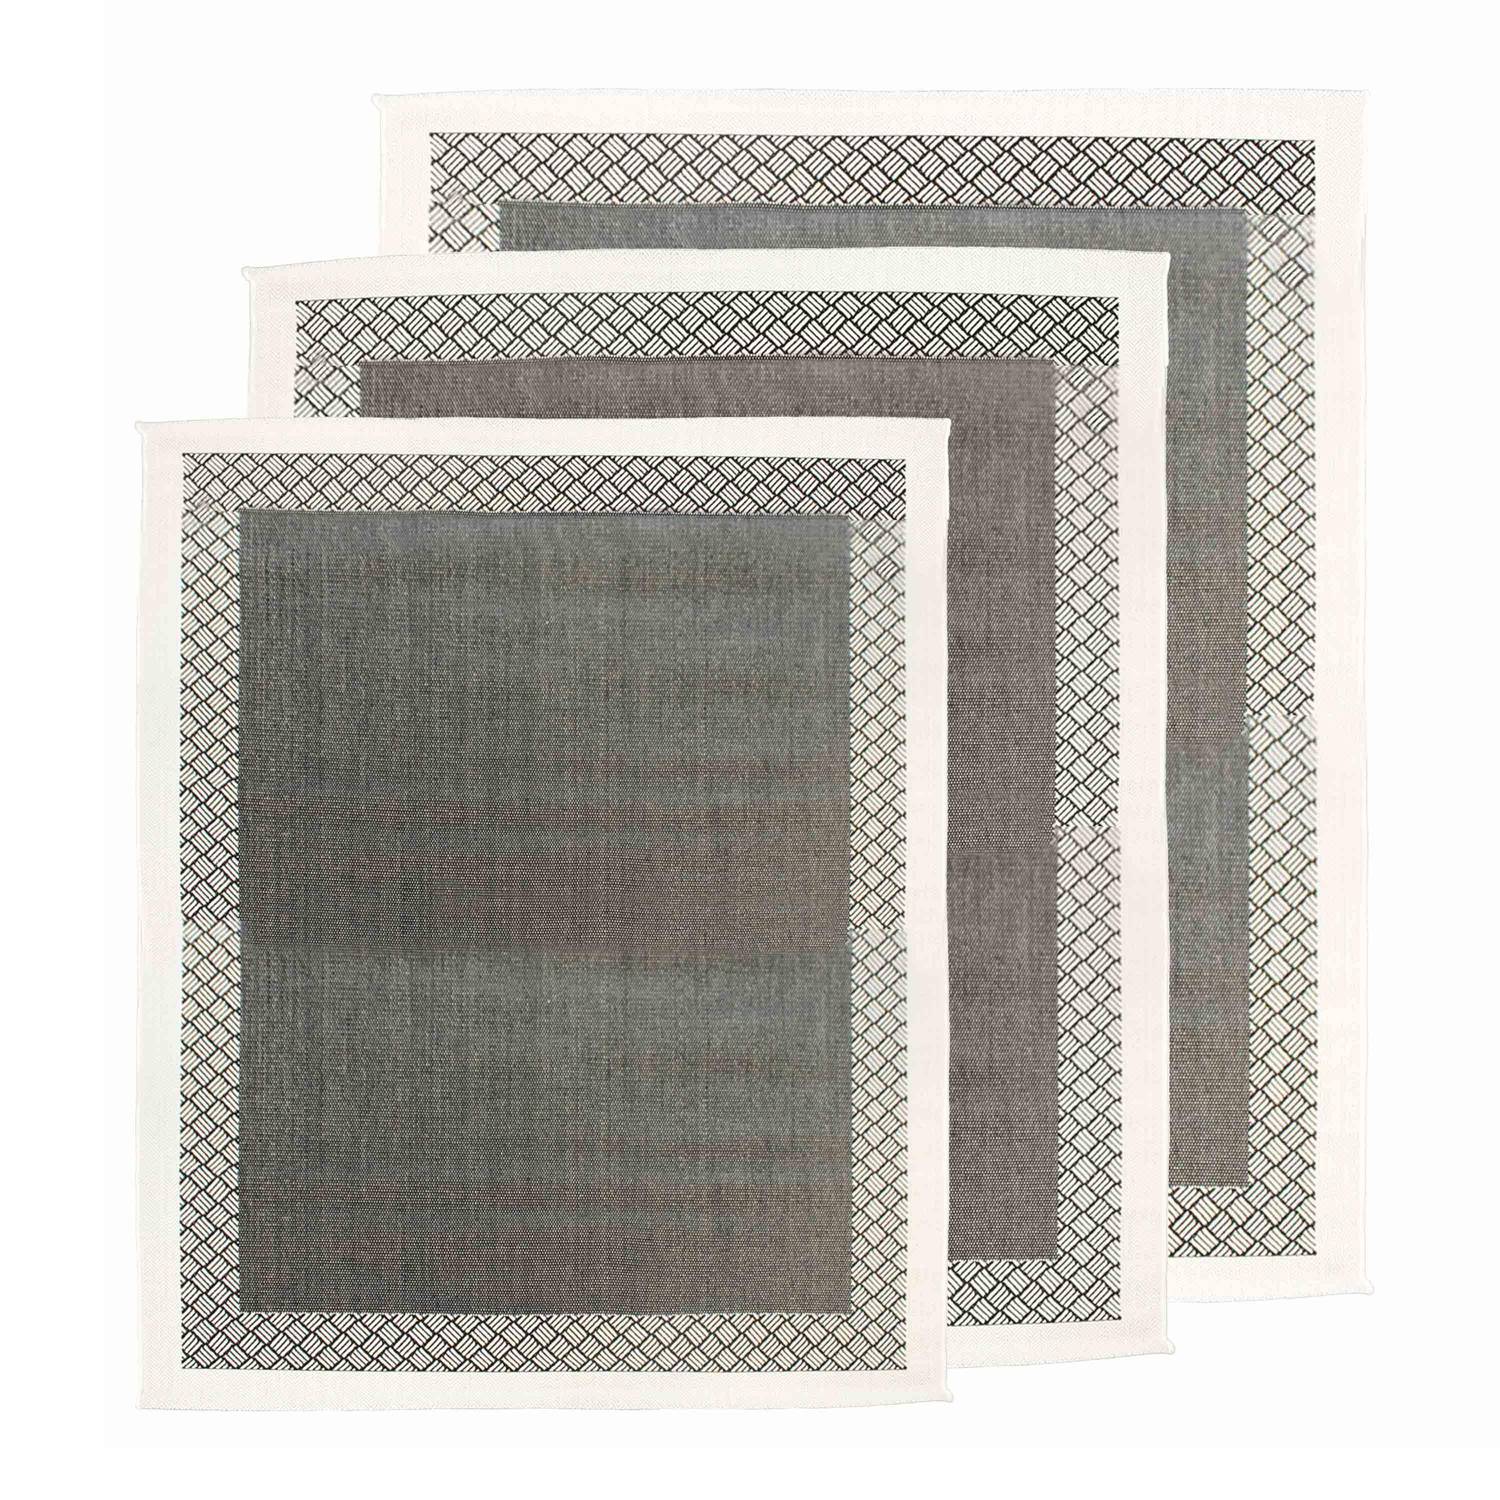 Buiten/binnen tapijt 150x200 cm, dubbel dambord patroon, zwart/grijs  Photo6